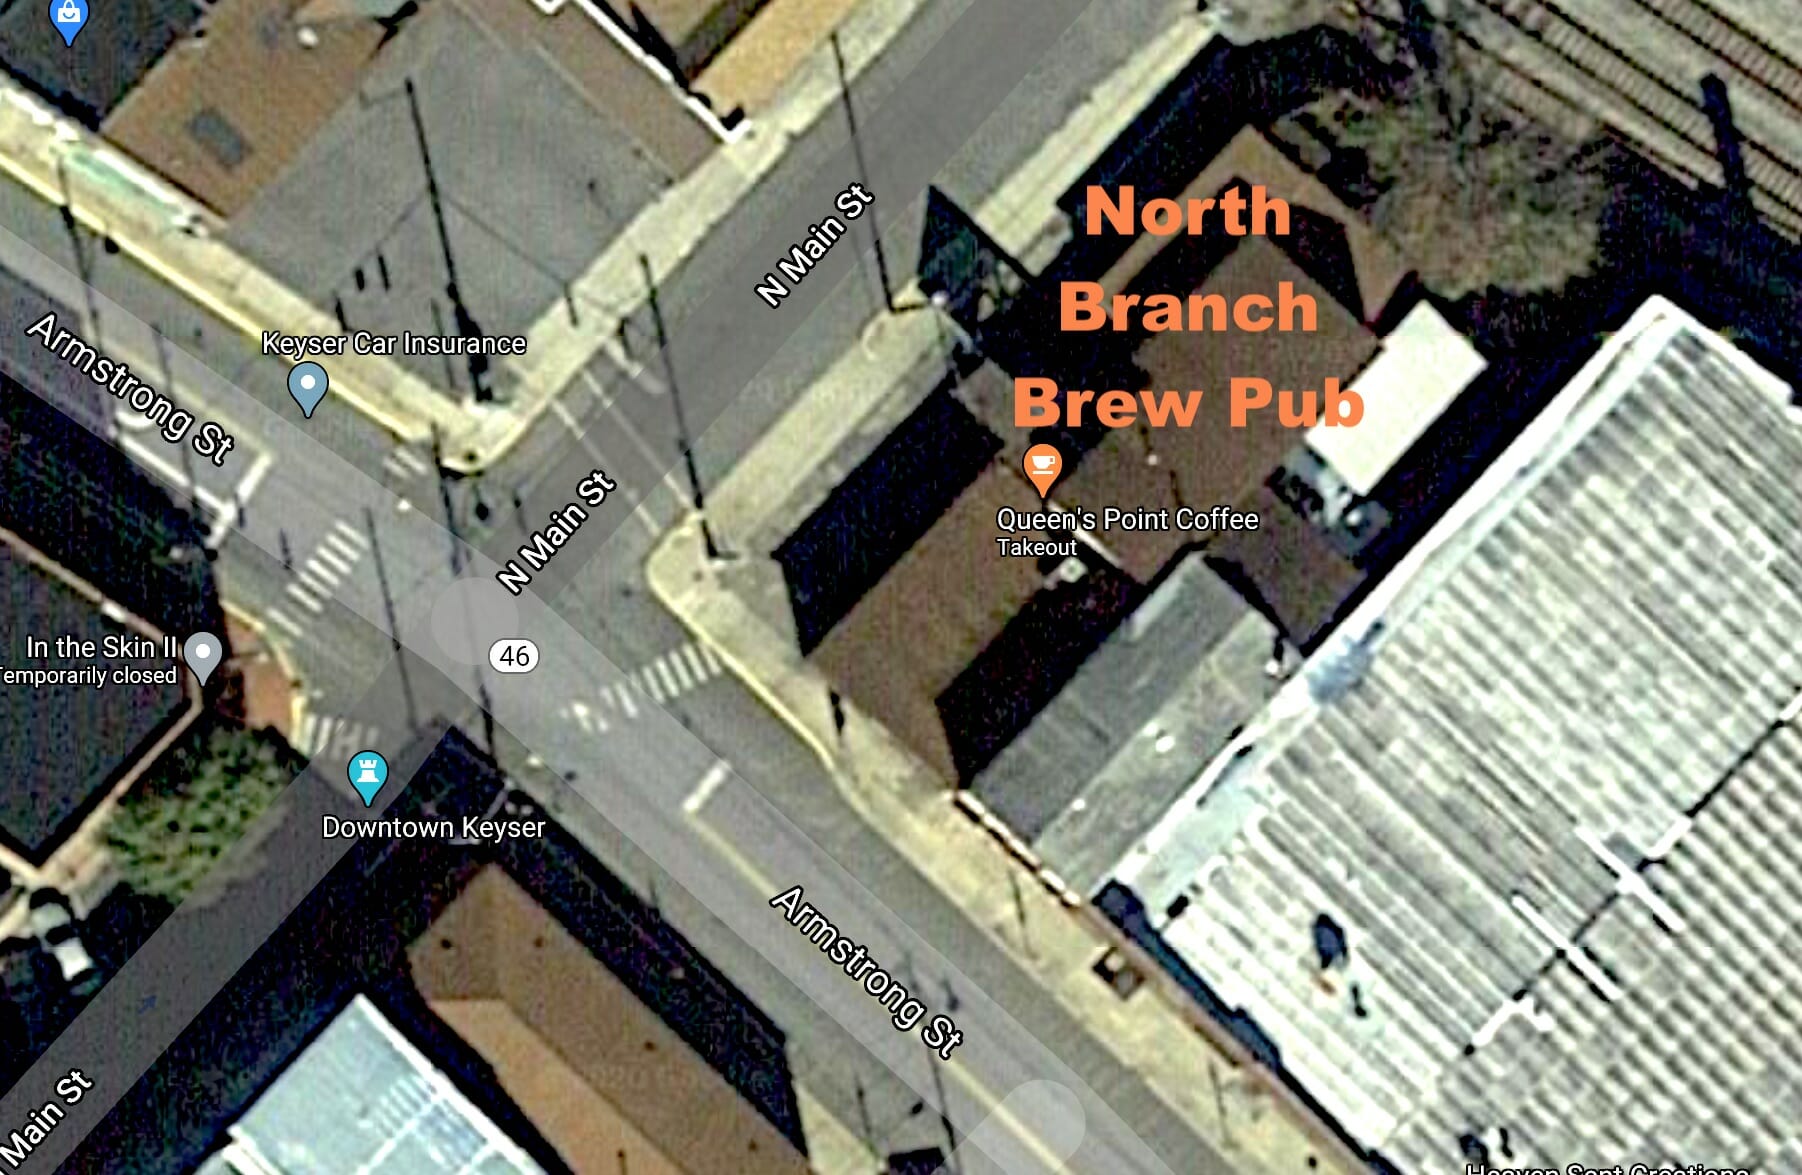 Future home of North Branch Brew Pub.